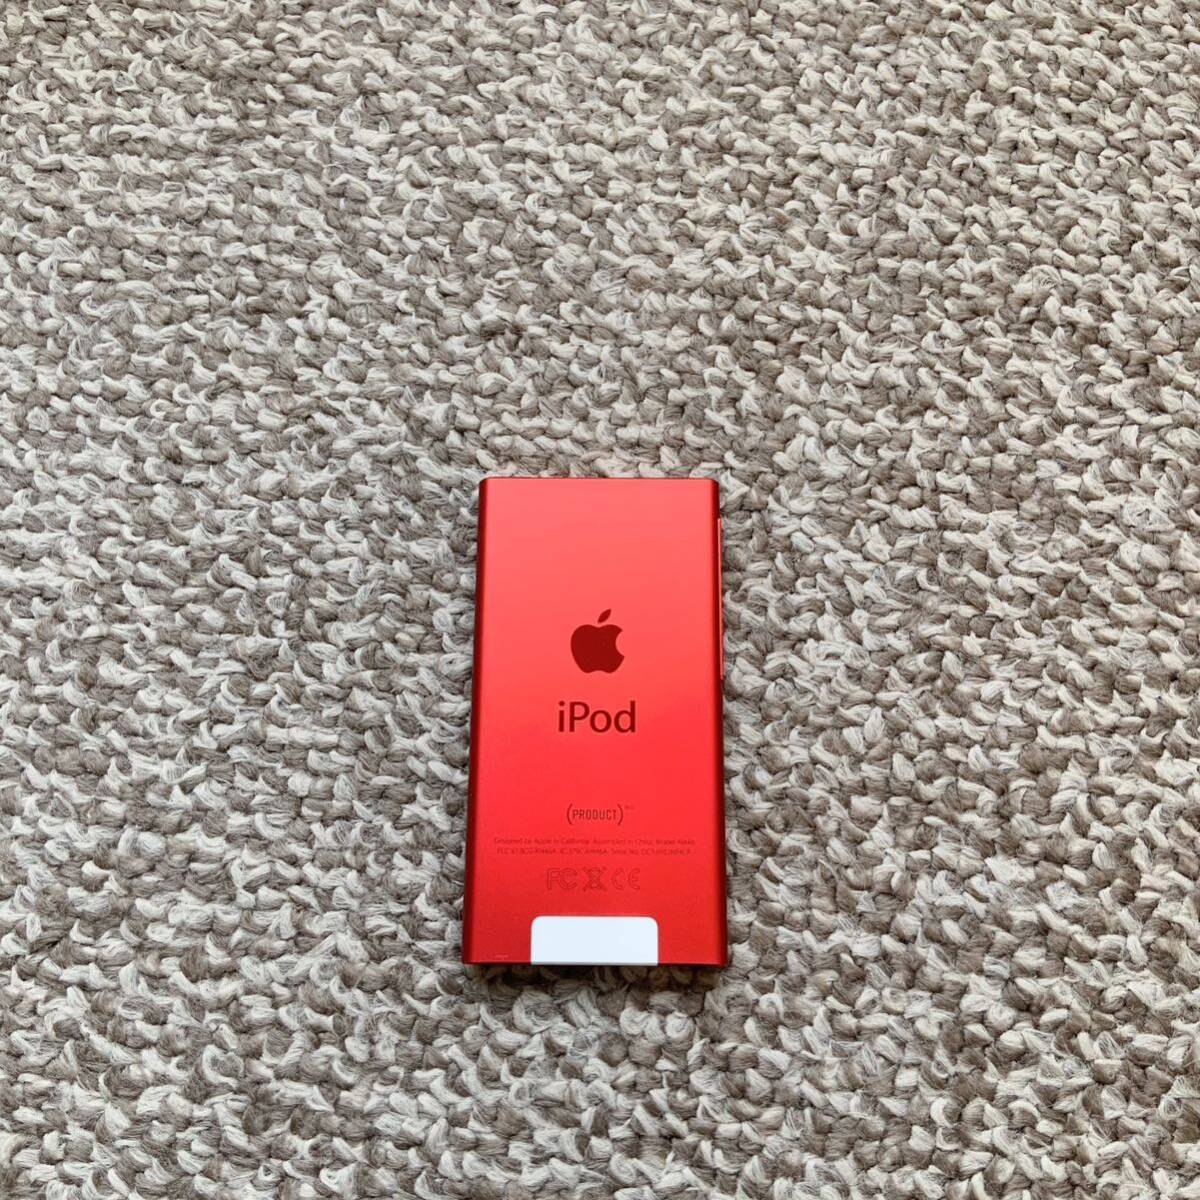 iPod nano 第7世代 16GB Apple アップル A1446 アイポッドナノ 本体 a 送料無料